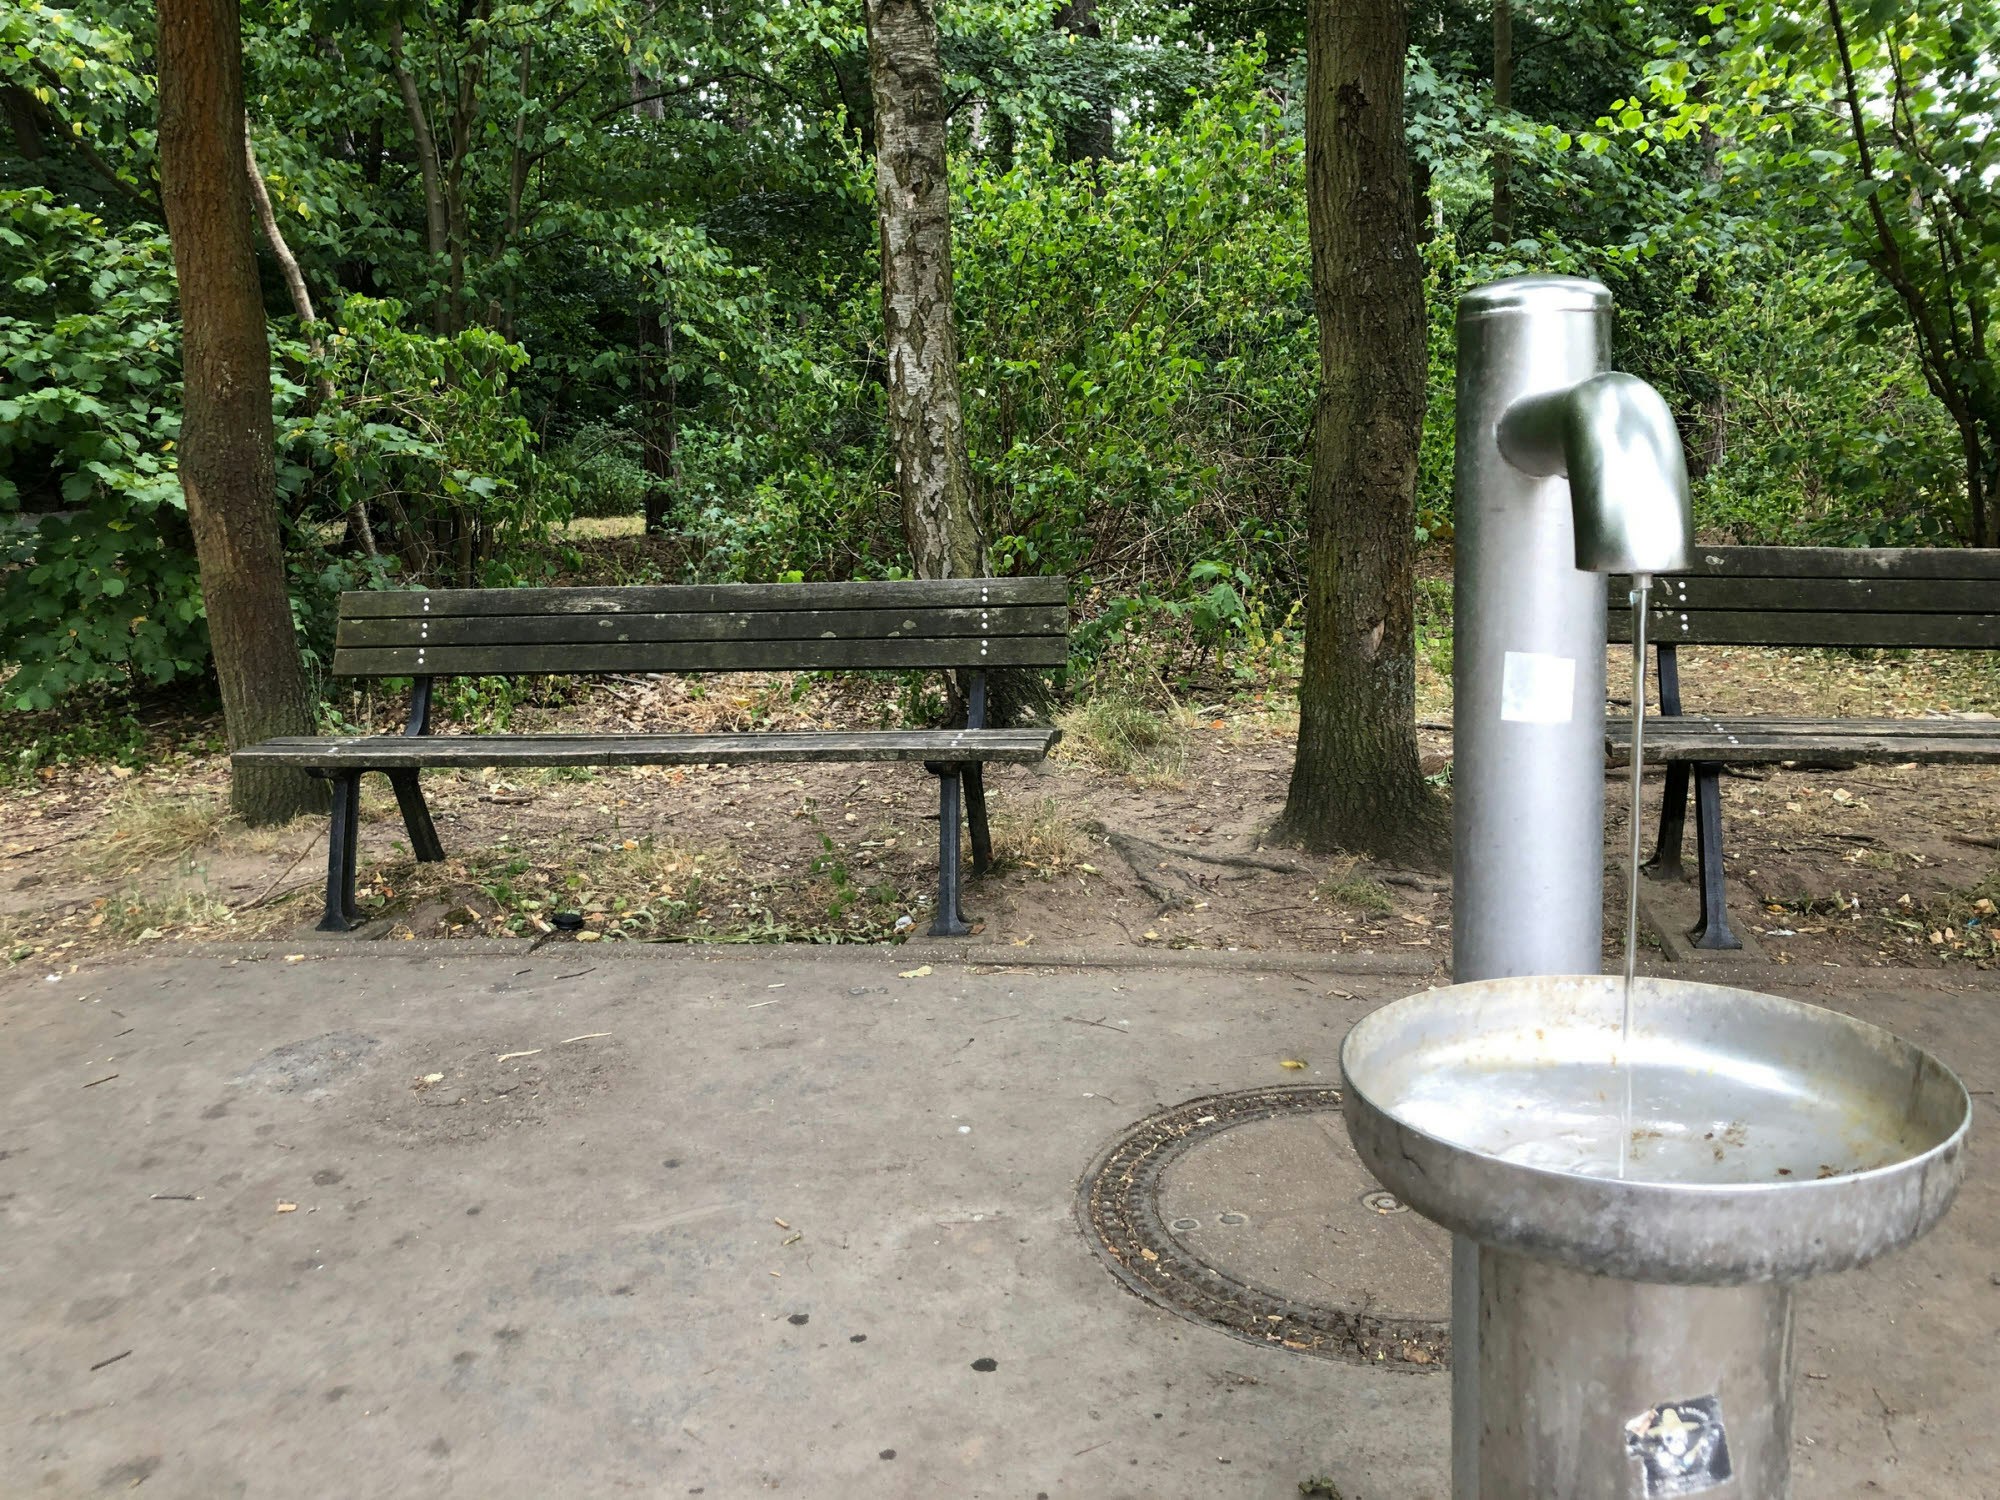 An einer Pumpe – am Wasserwerk Weiler gelegen – können sich Spaziergänger mit frischem Wasser versorgen.